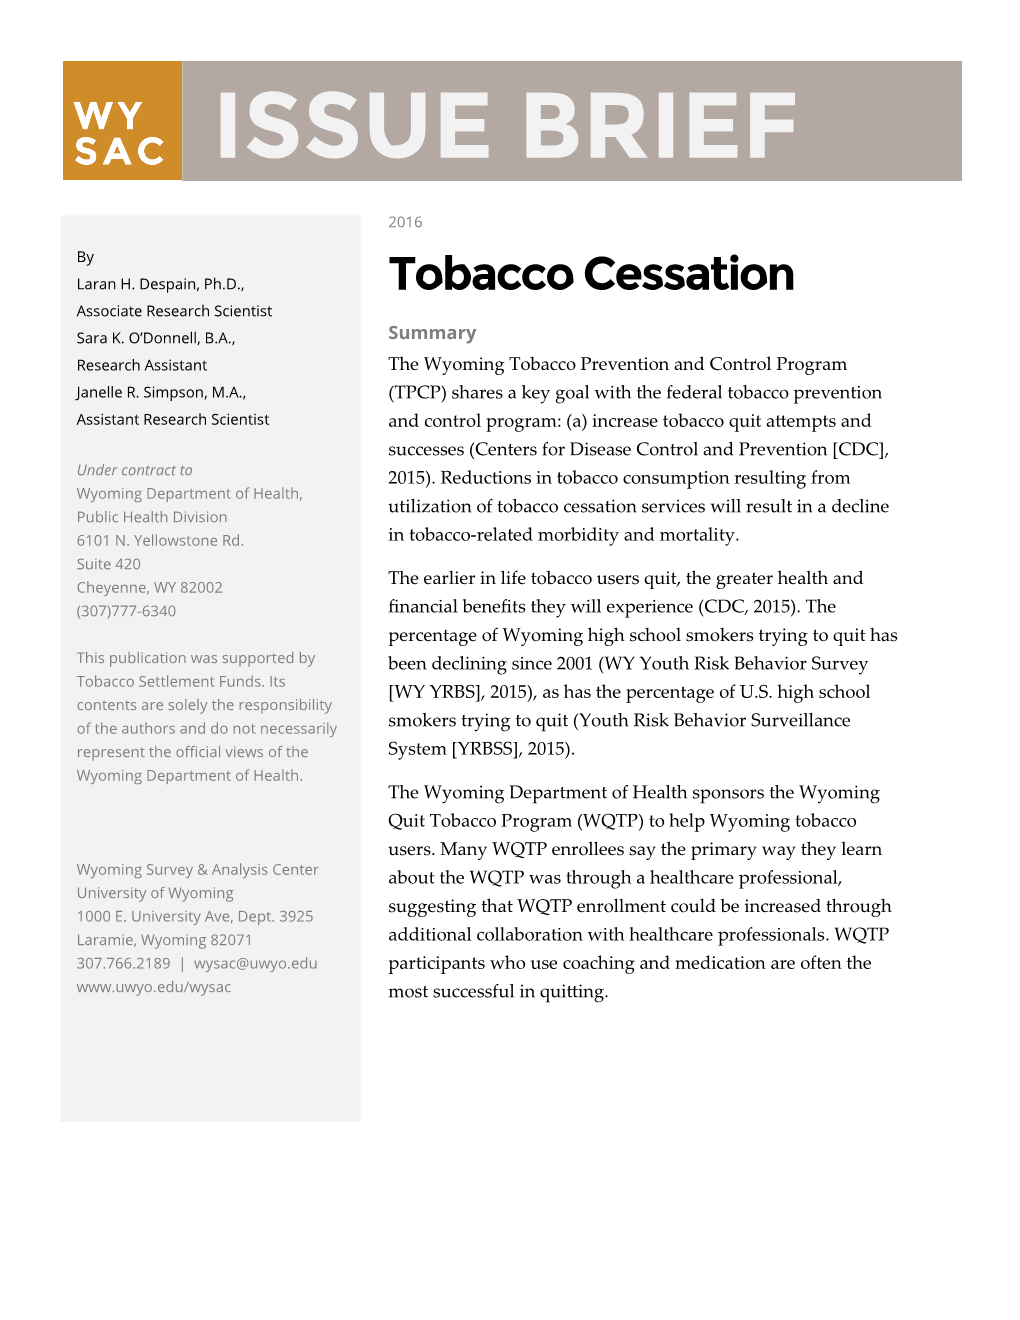 Tobacco Cessation Issue Brief